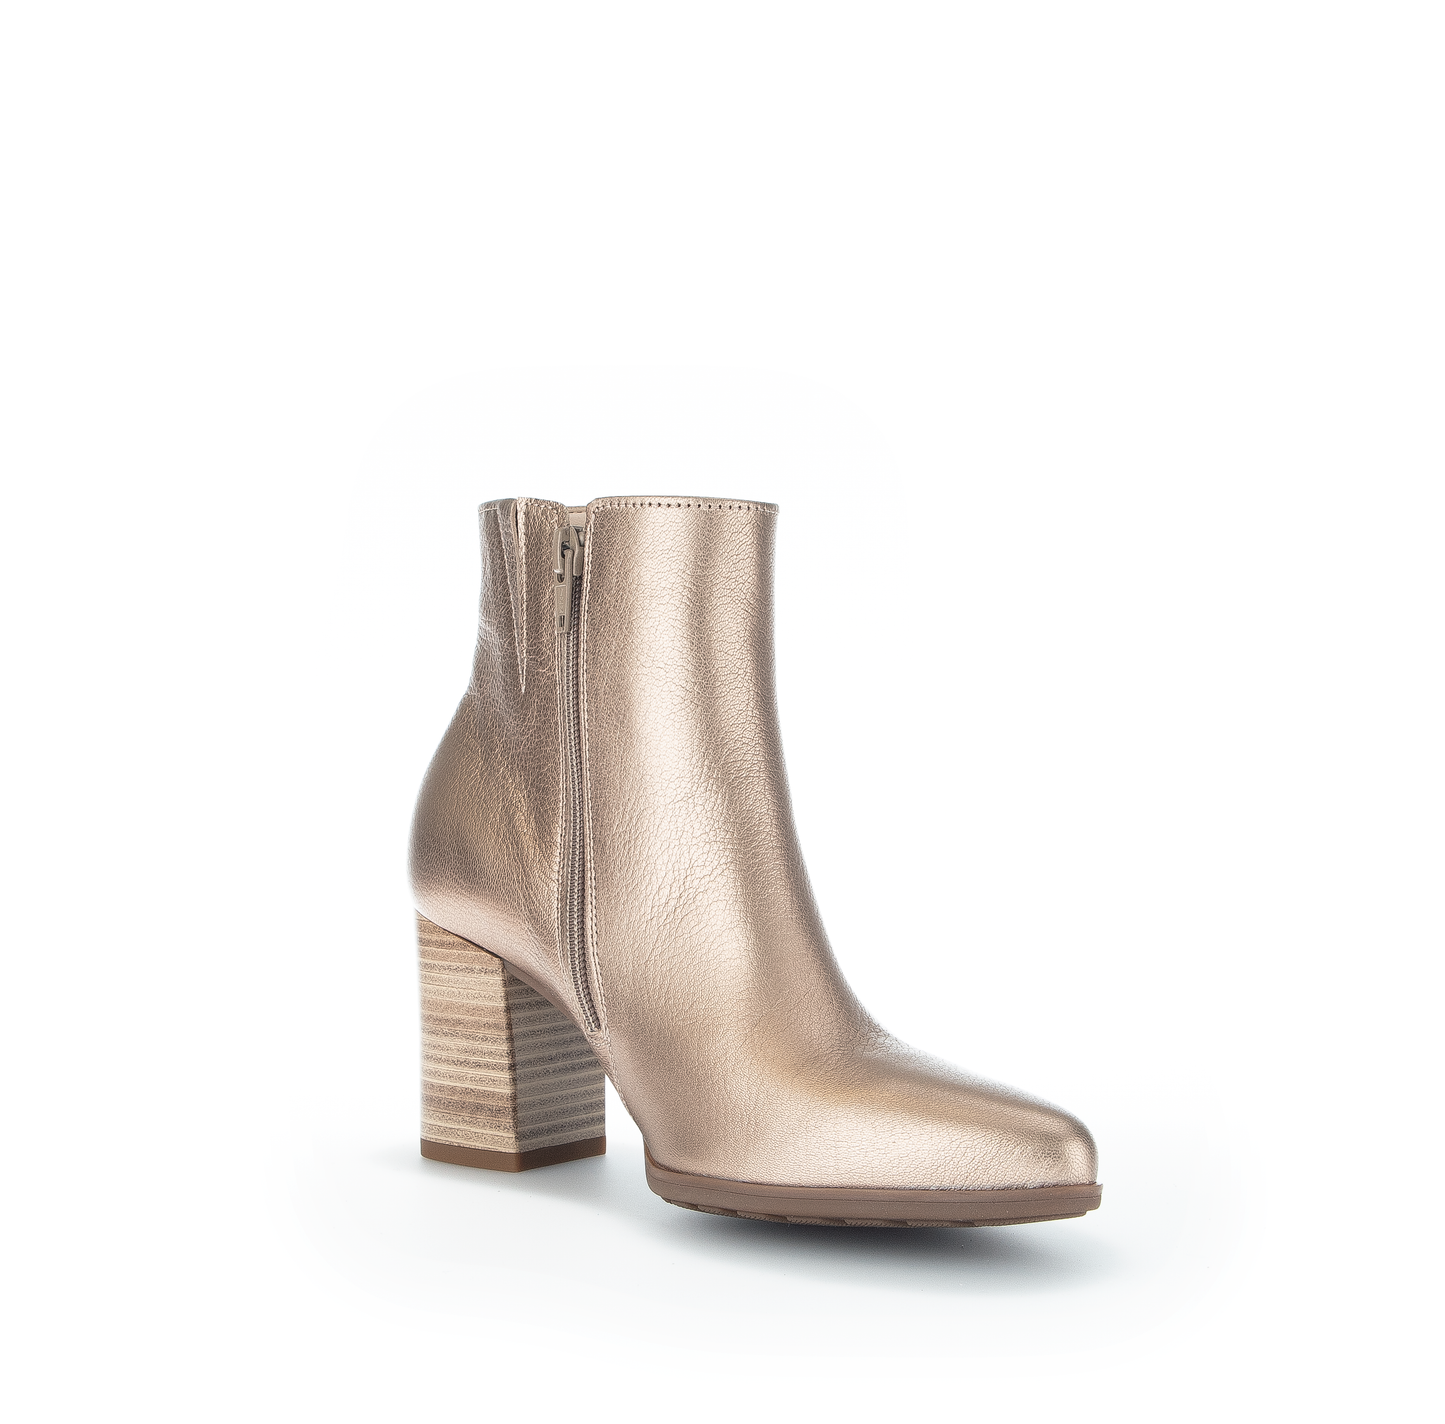 Gabor 92.910.64 Comfort Gold Metallic Heel Ankle Boots